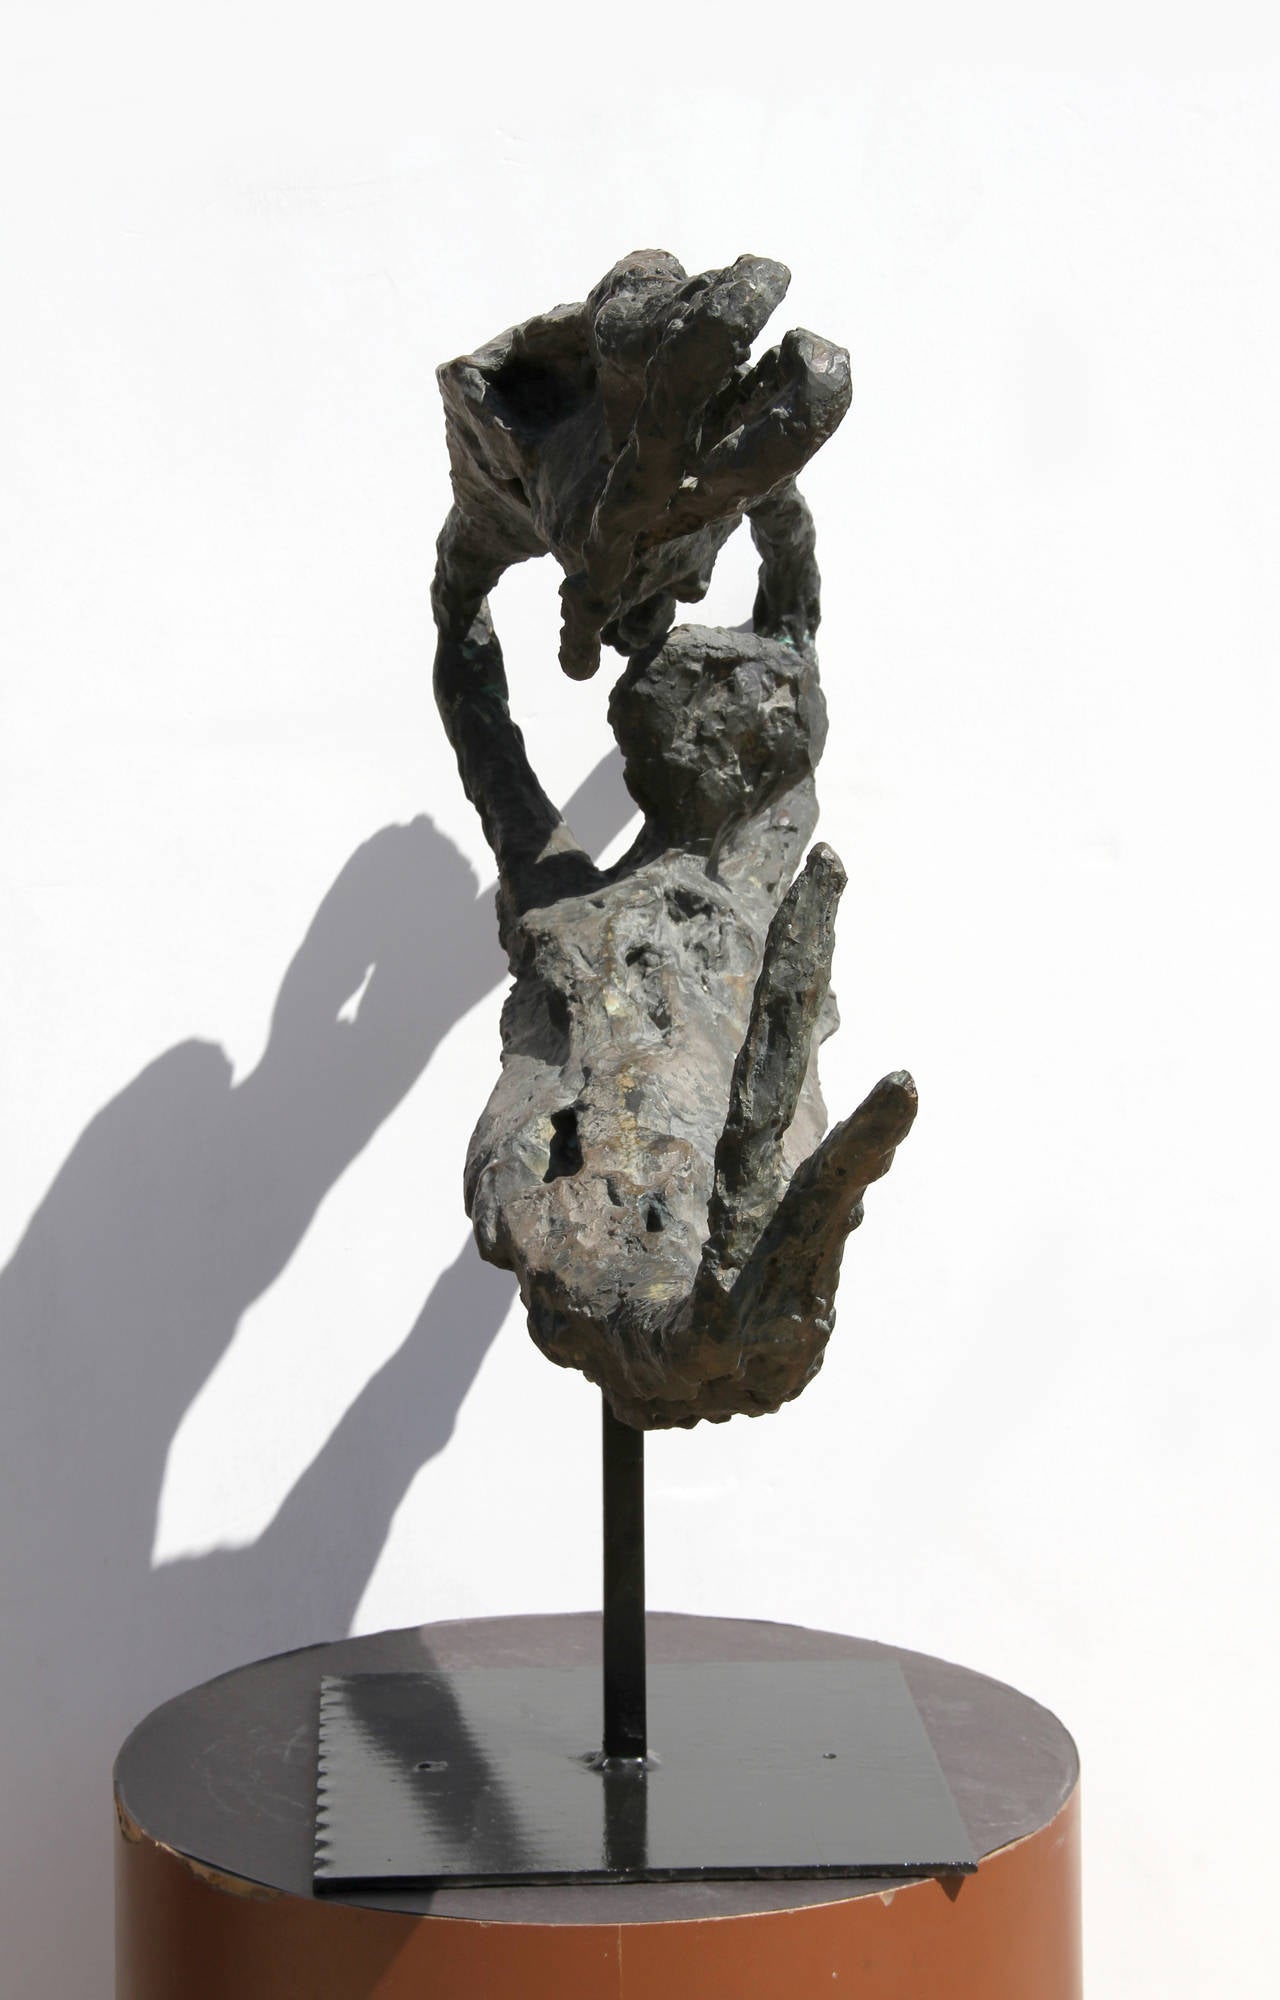 Trapeze Artists - Sculpture by Gérard Koch